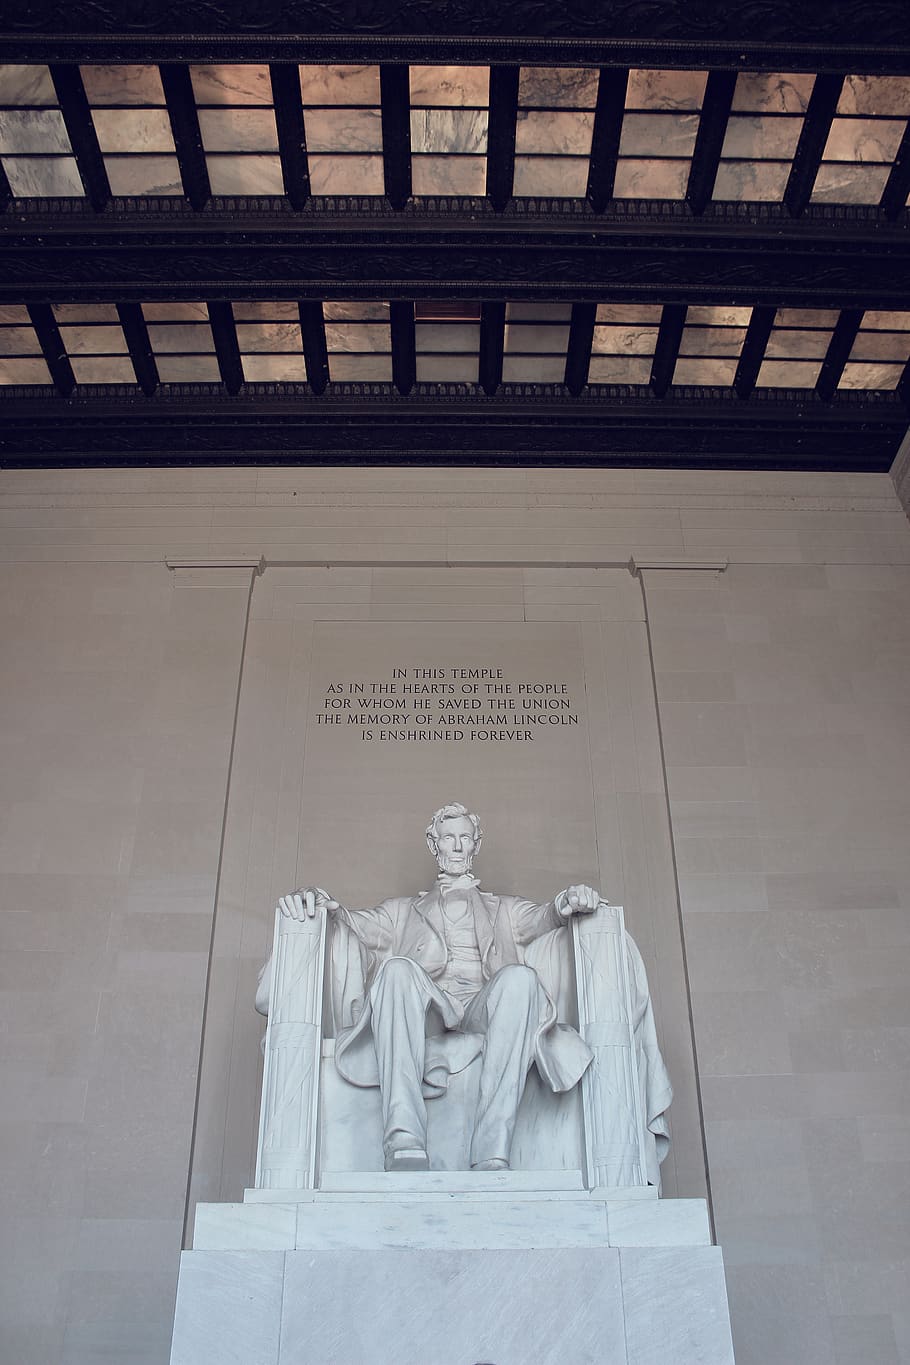 Washington DC, Washington, praça de lafayette, estátua, atração, histórico, parque, arquitetura, monumento, escultura